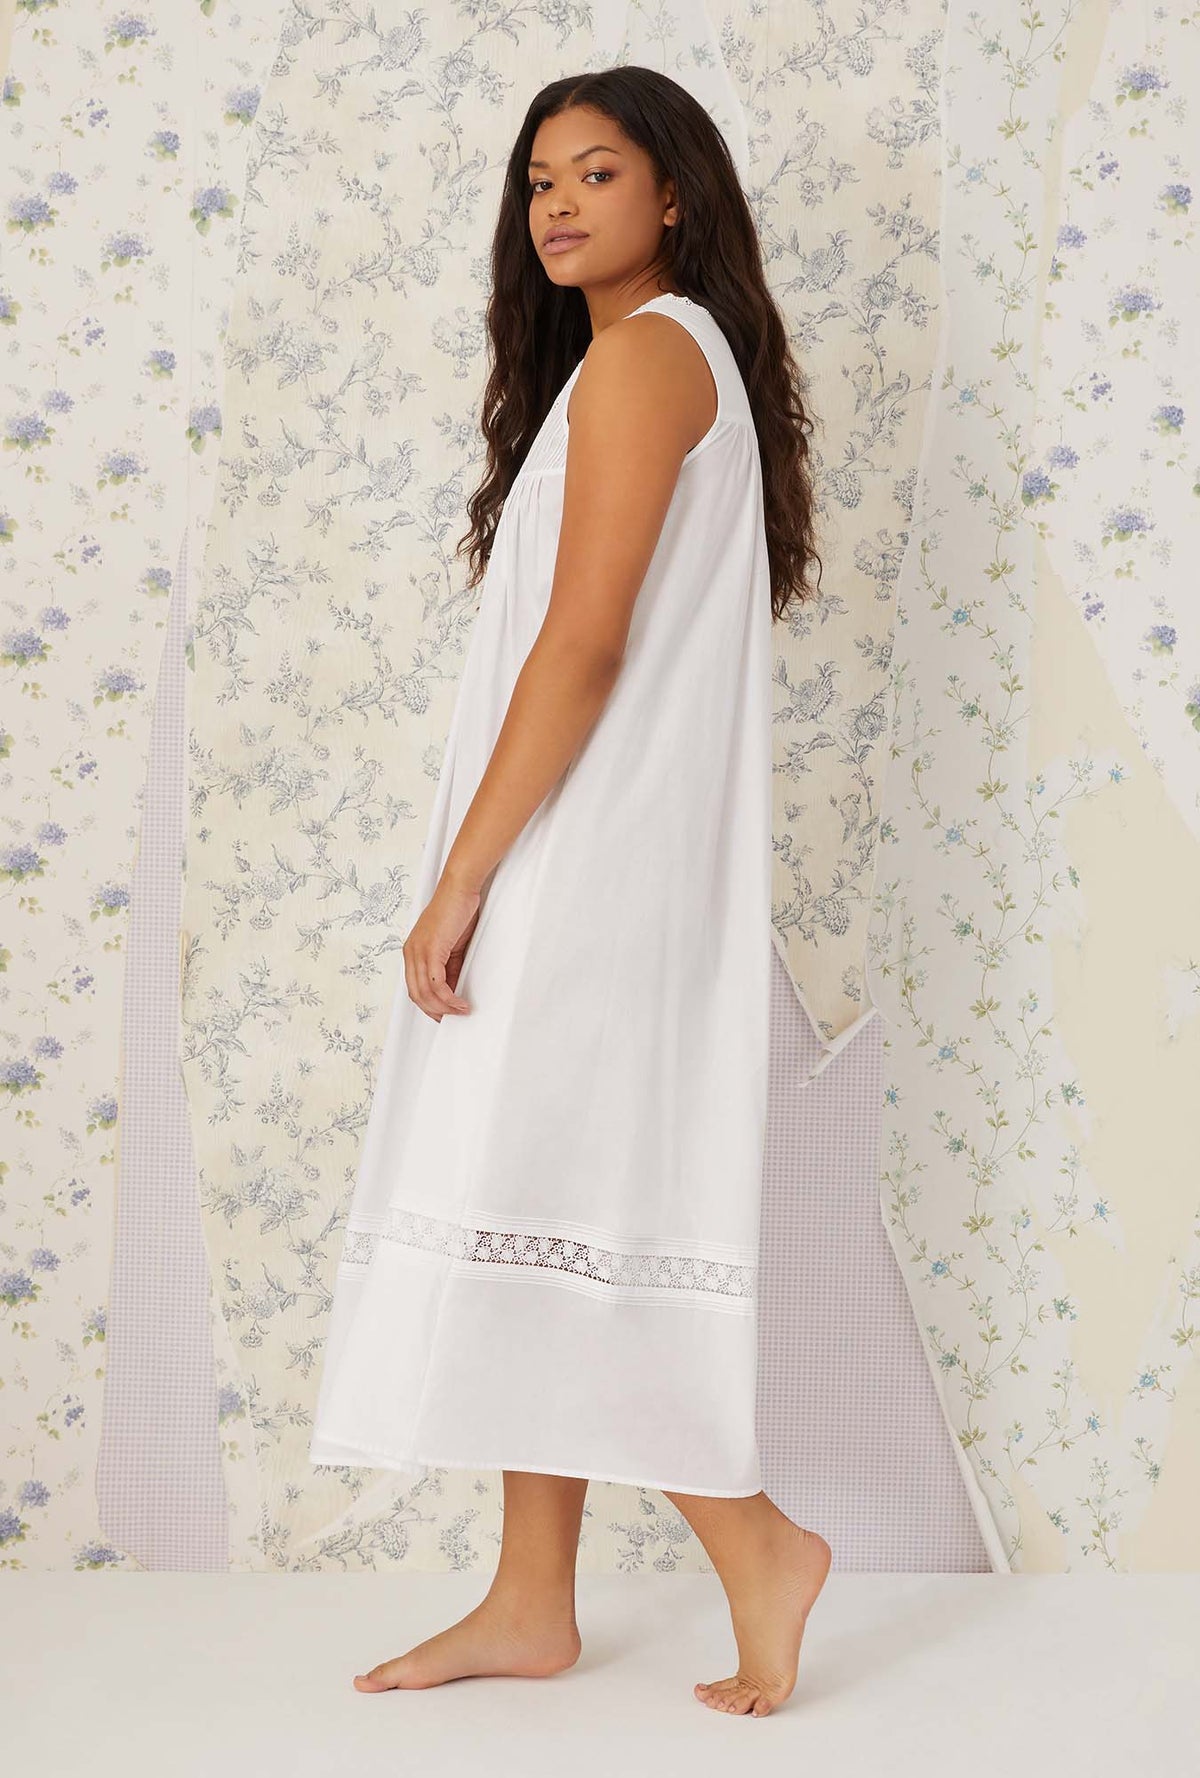 A lady wearing white sleeveless portofino ballet nightgown.